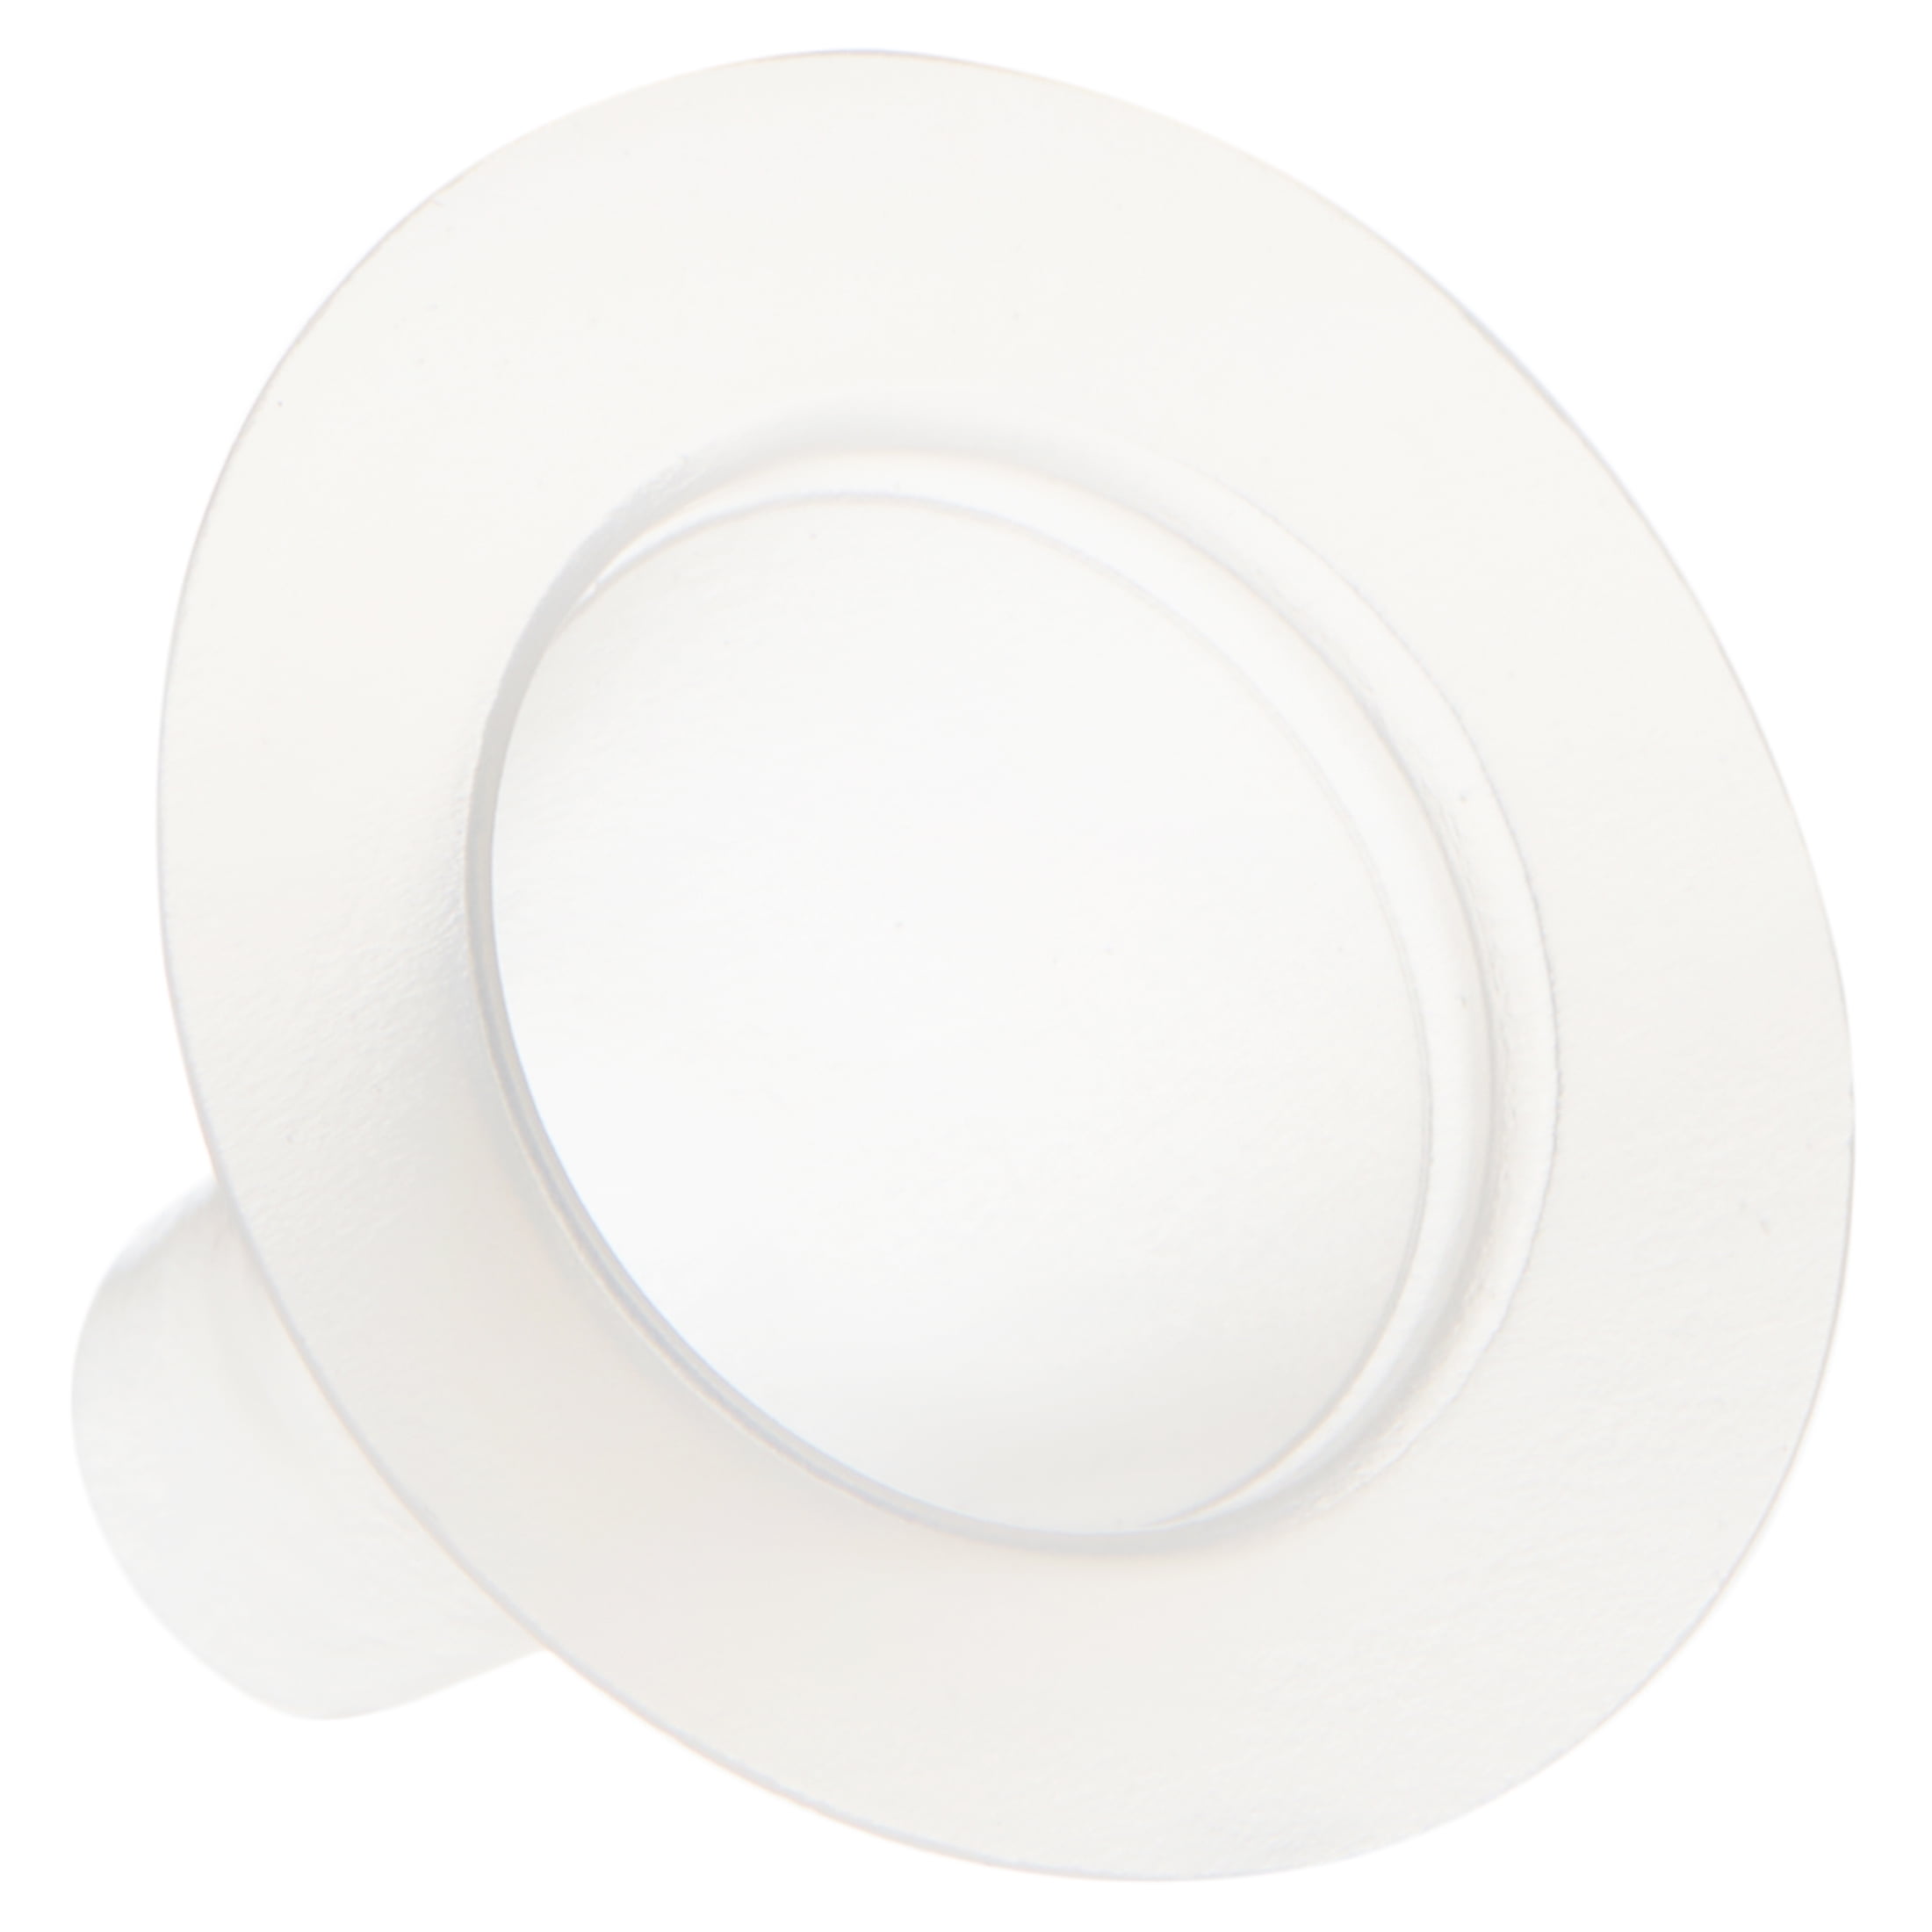 White Disposable 18cm Paper Plates Bulk Buy 108 3 packs of 36 